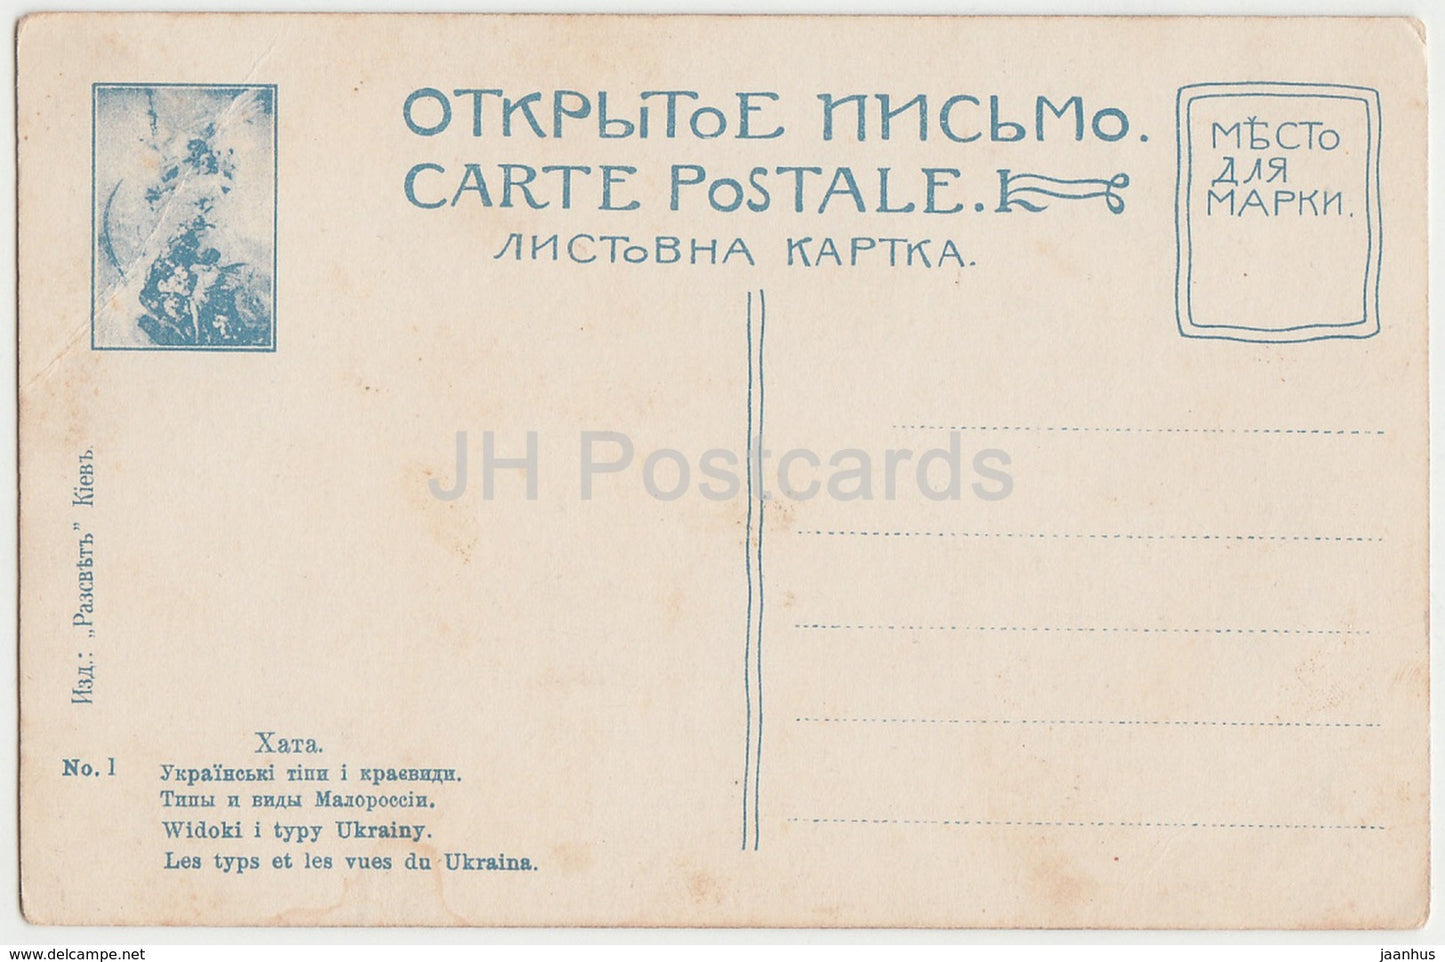 Khata – Ukrainisches Haus – Les Typs et les vues du Ukraina – alte Postkarte – Ukraine – Kaiserliches Russland – unbenutzt